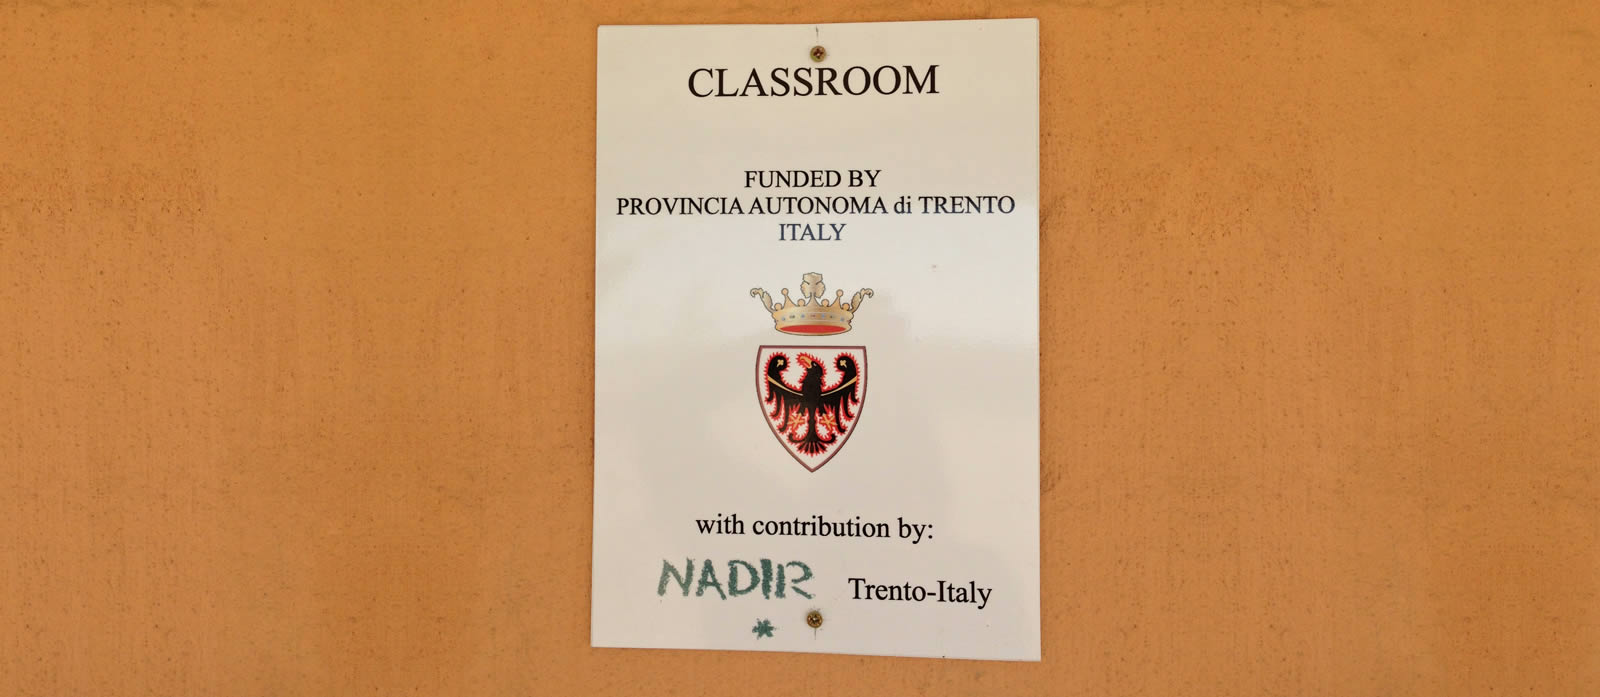 Mammadù Non Profit Organization - La Struttura - Aule Finanziate dalla Provincia Autonoma di Trento